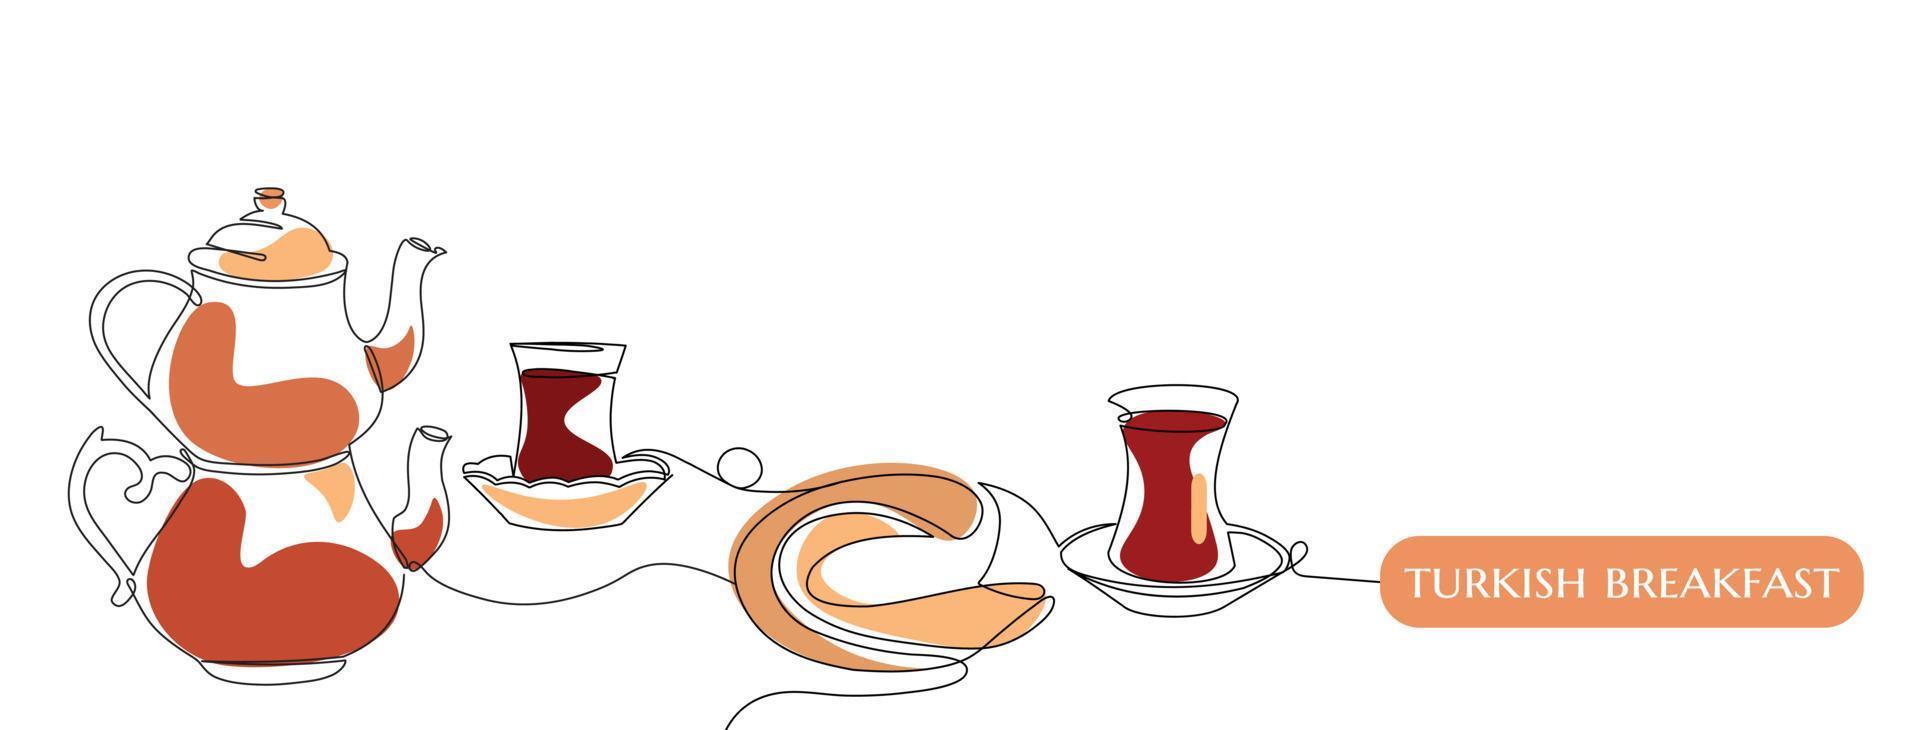 colazione tradizionale turca. tè e simit o bagel turco. vettore astratto un'arte lineare continua con testo in stile turco. elementi isolati per banner, logo o social media.